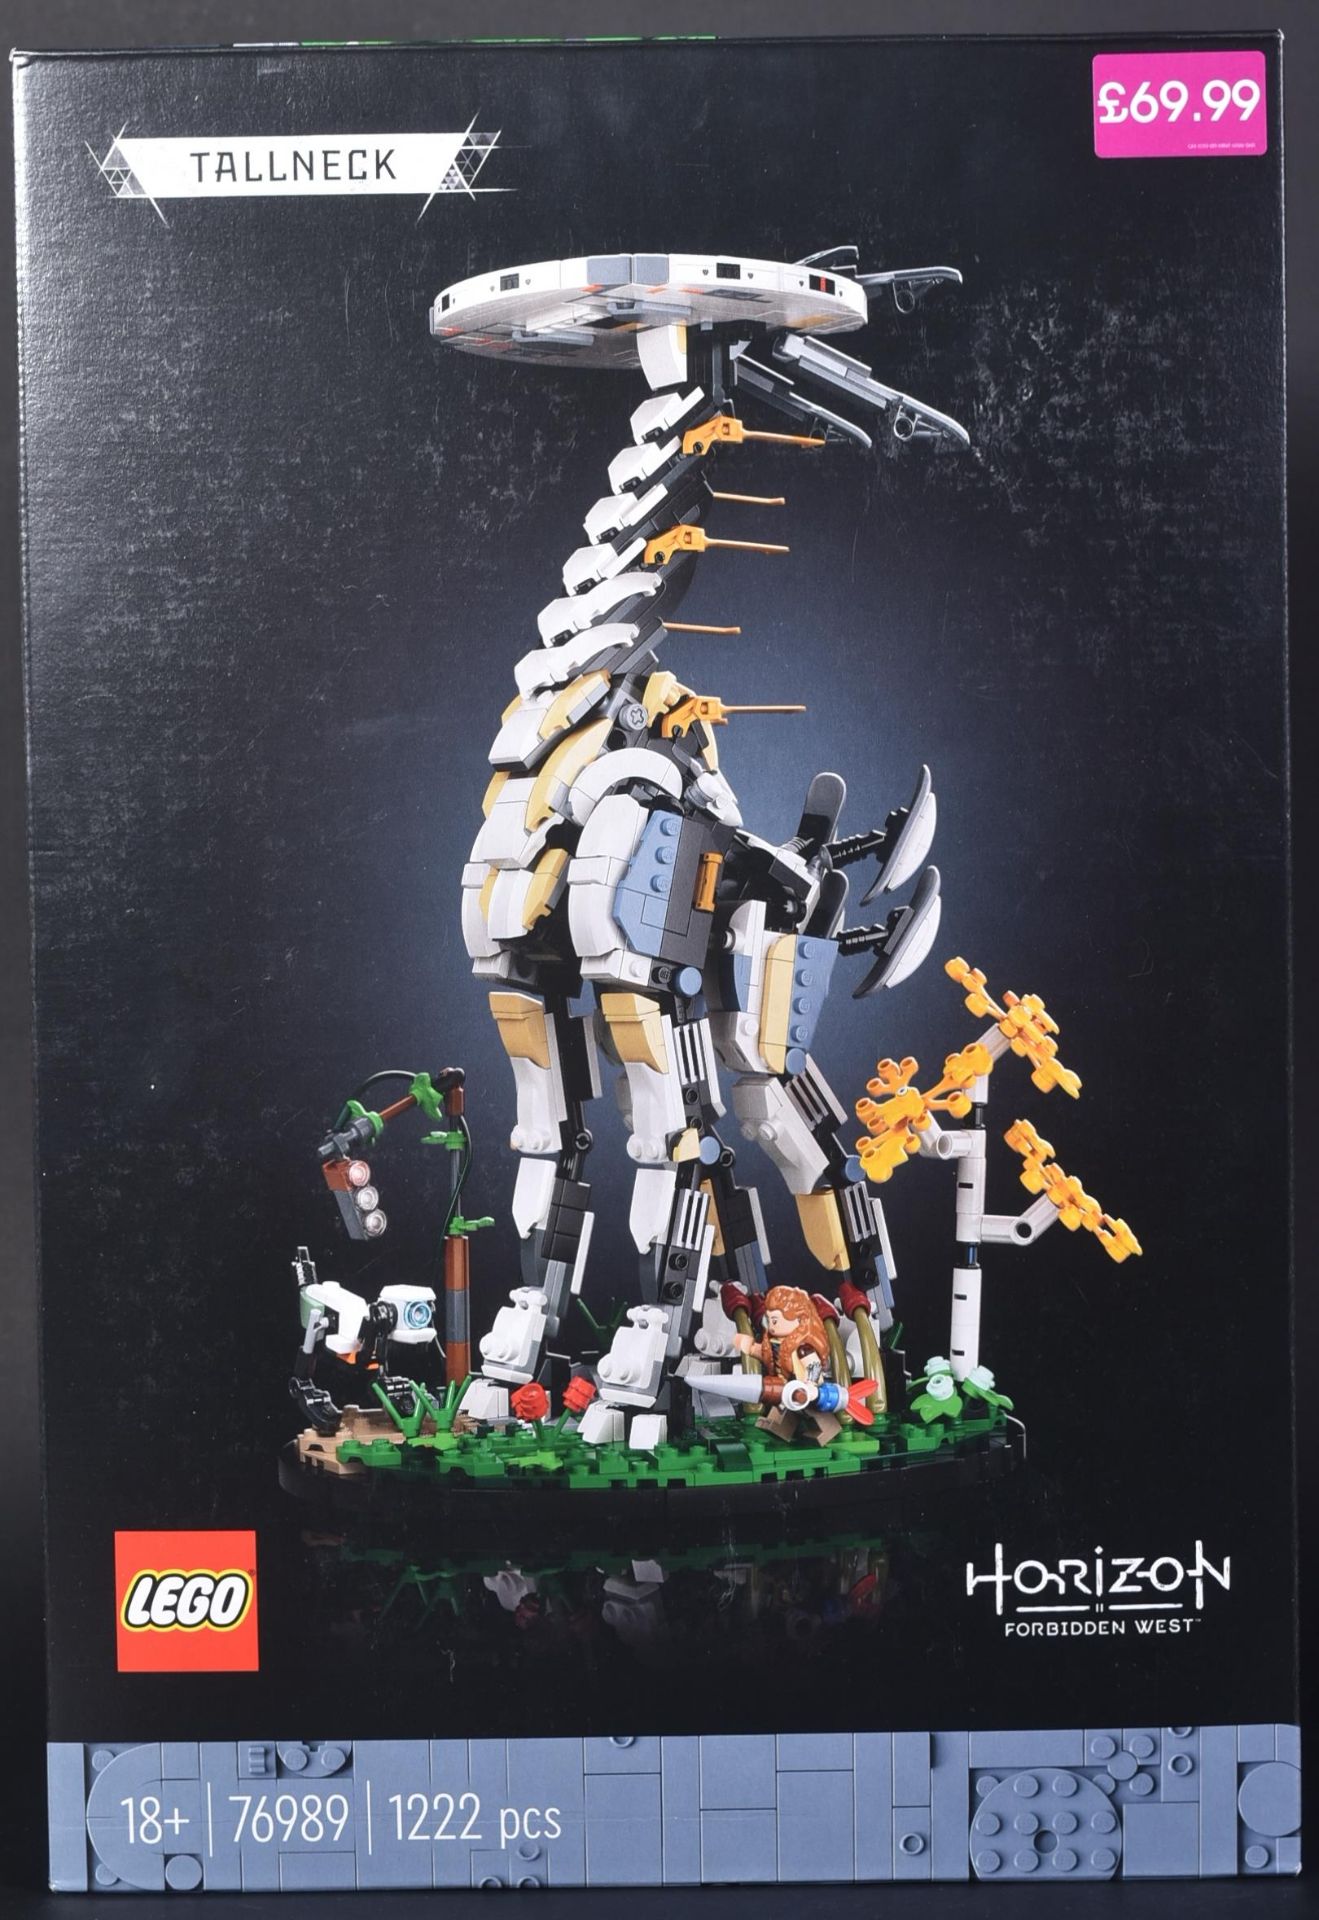 LEGO SET - HORIZON FORBIDDEN WEST - 76989 - TALLNECK